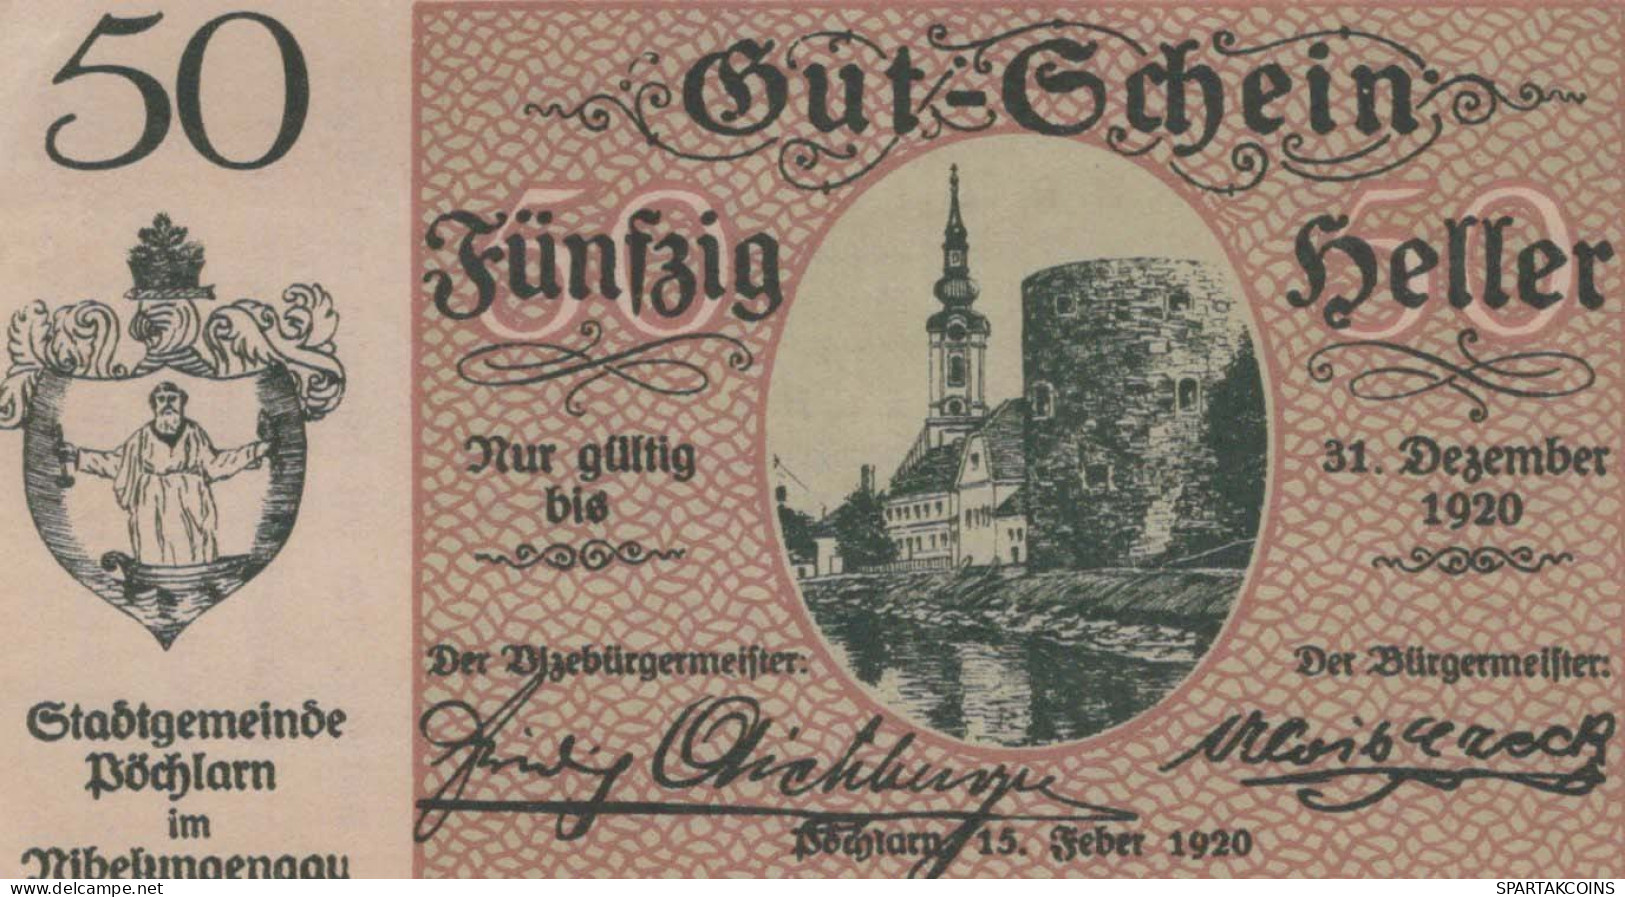 50 HELLER 1920 Stadt PoCHLARN Niedrigeren Österreich Notgeld Banknote #PE388 - [11] Emisiones Locales